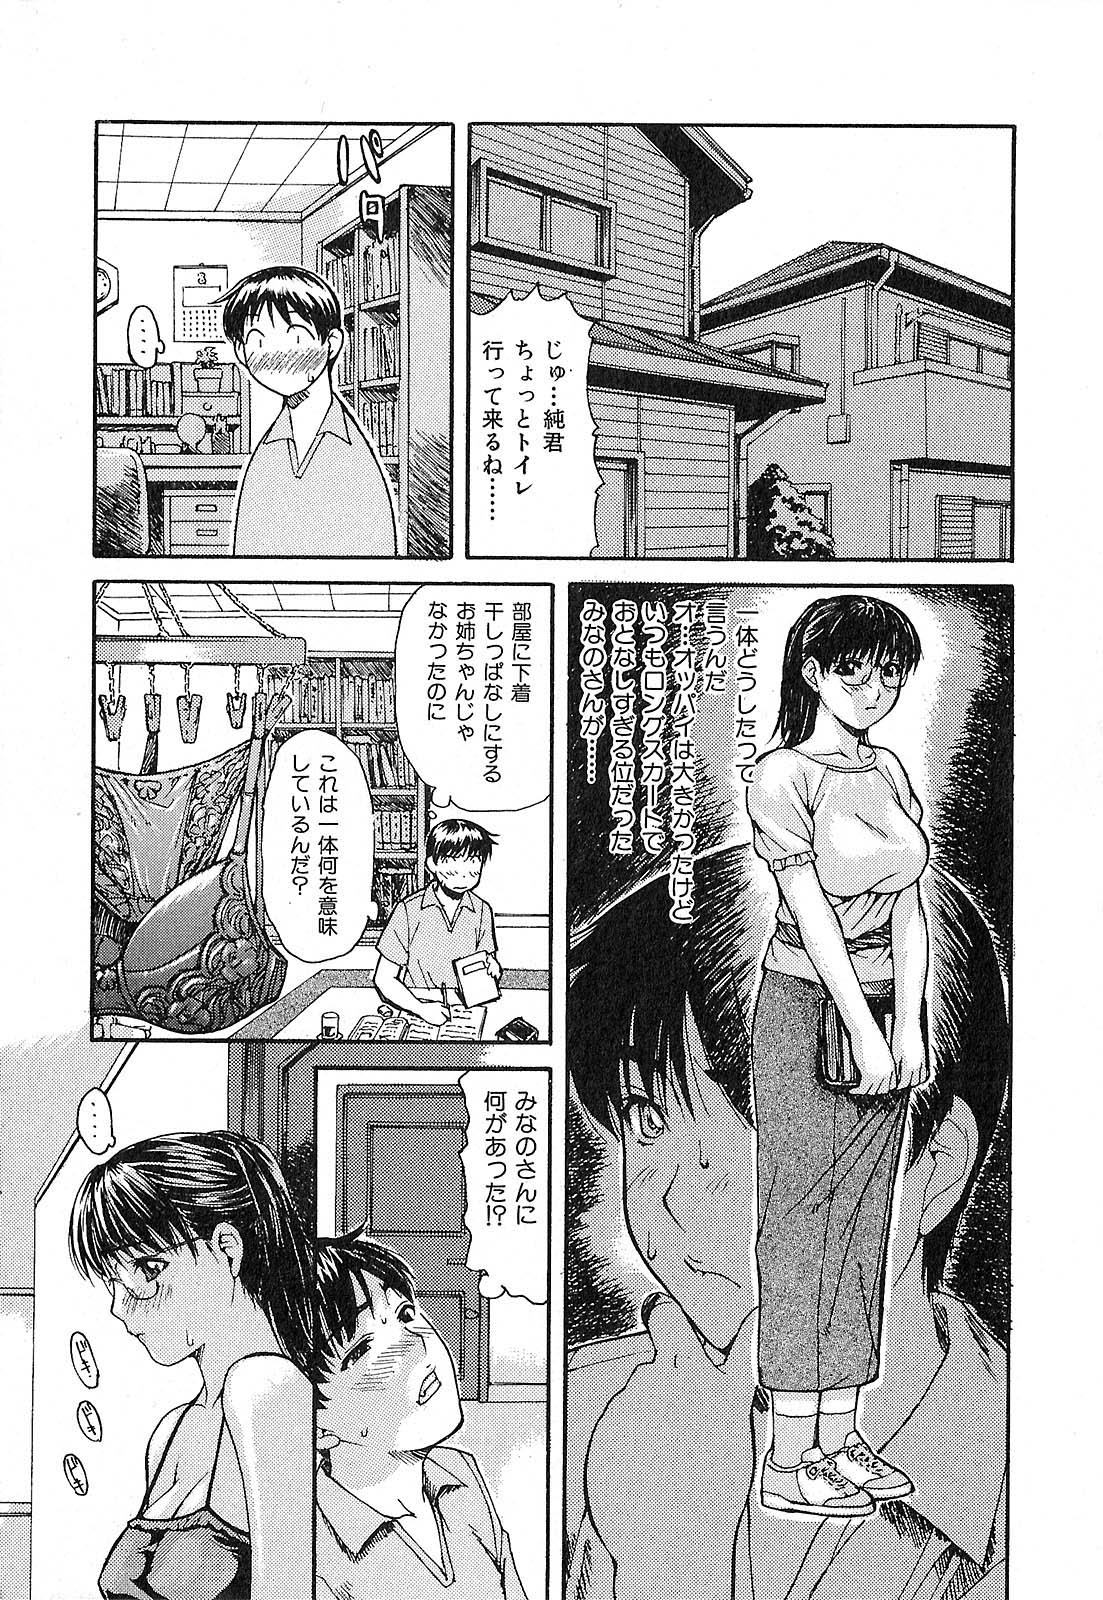 [Machinegun Joe] Tonari no Minano Sensei | My neighboring teacher MINANO [MGジョー] 隣のみなの先生